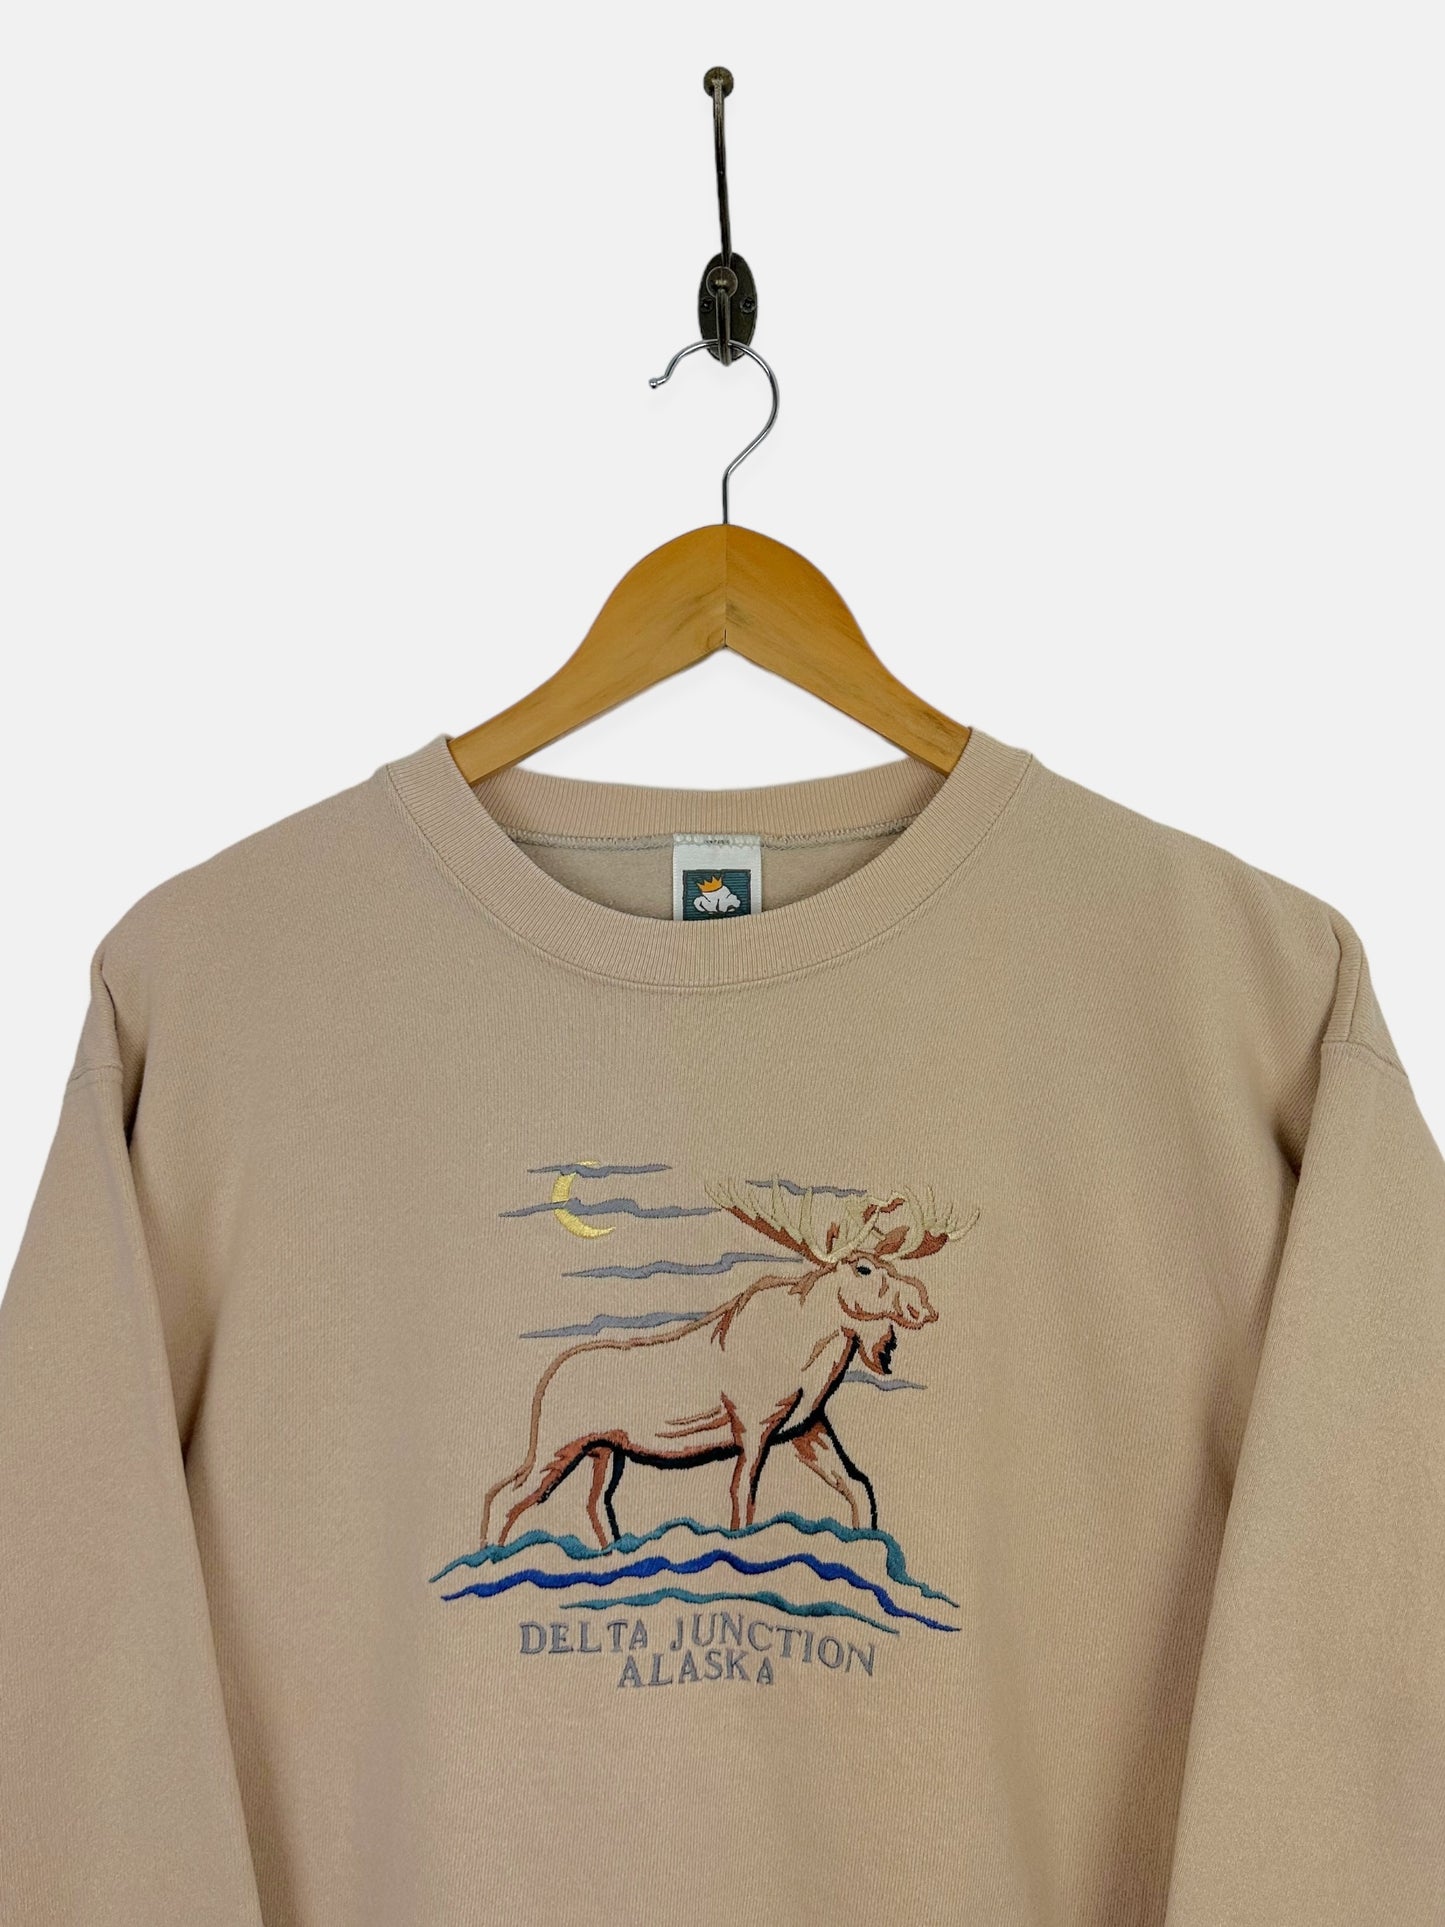 90's Delta Junction Alaska Embroidered Vintage Sweatshirt Size 12